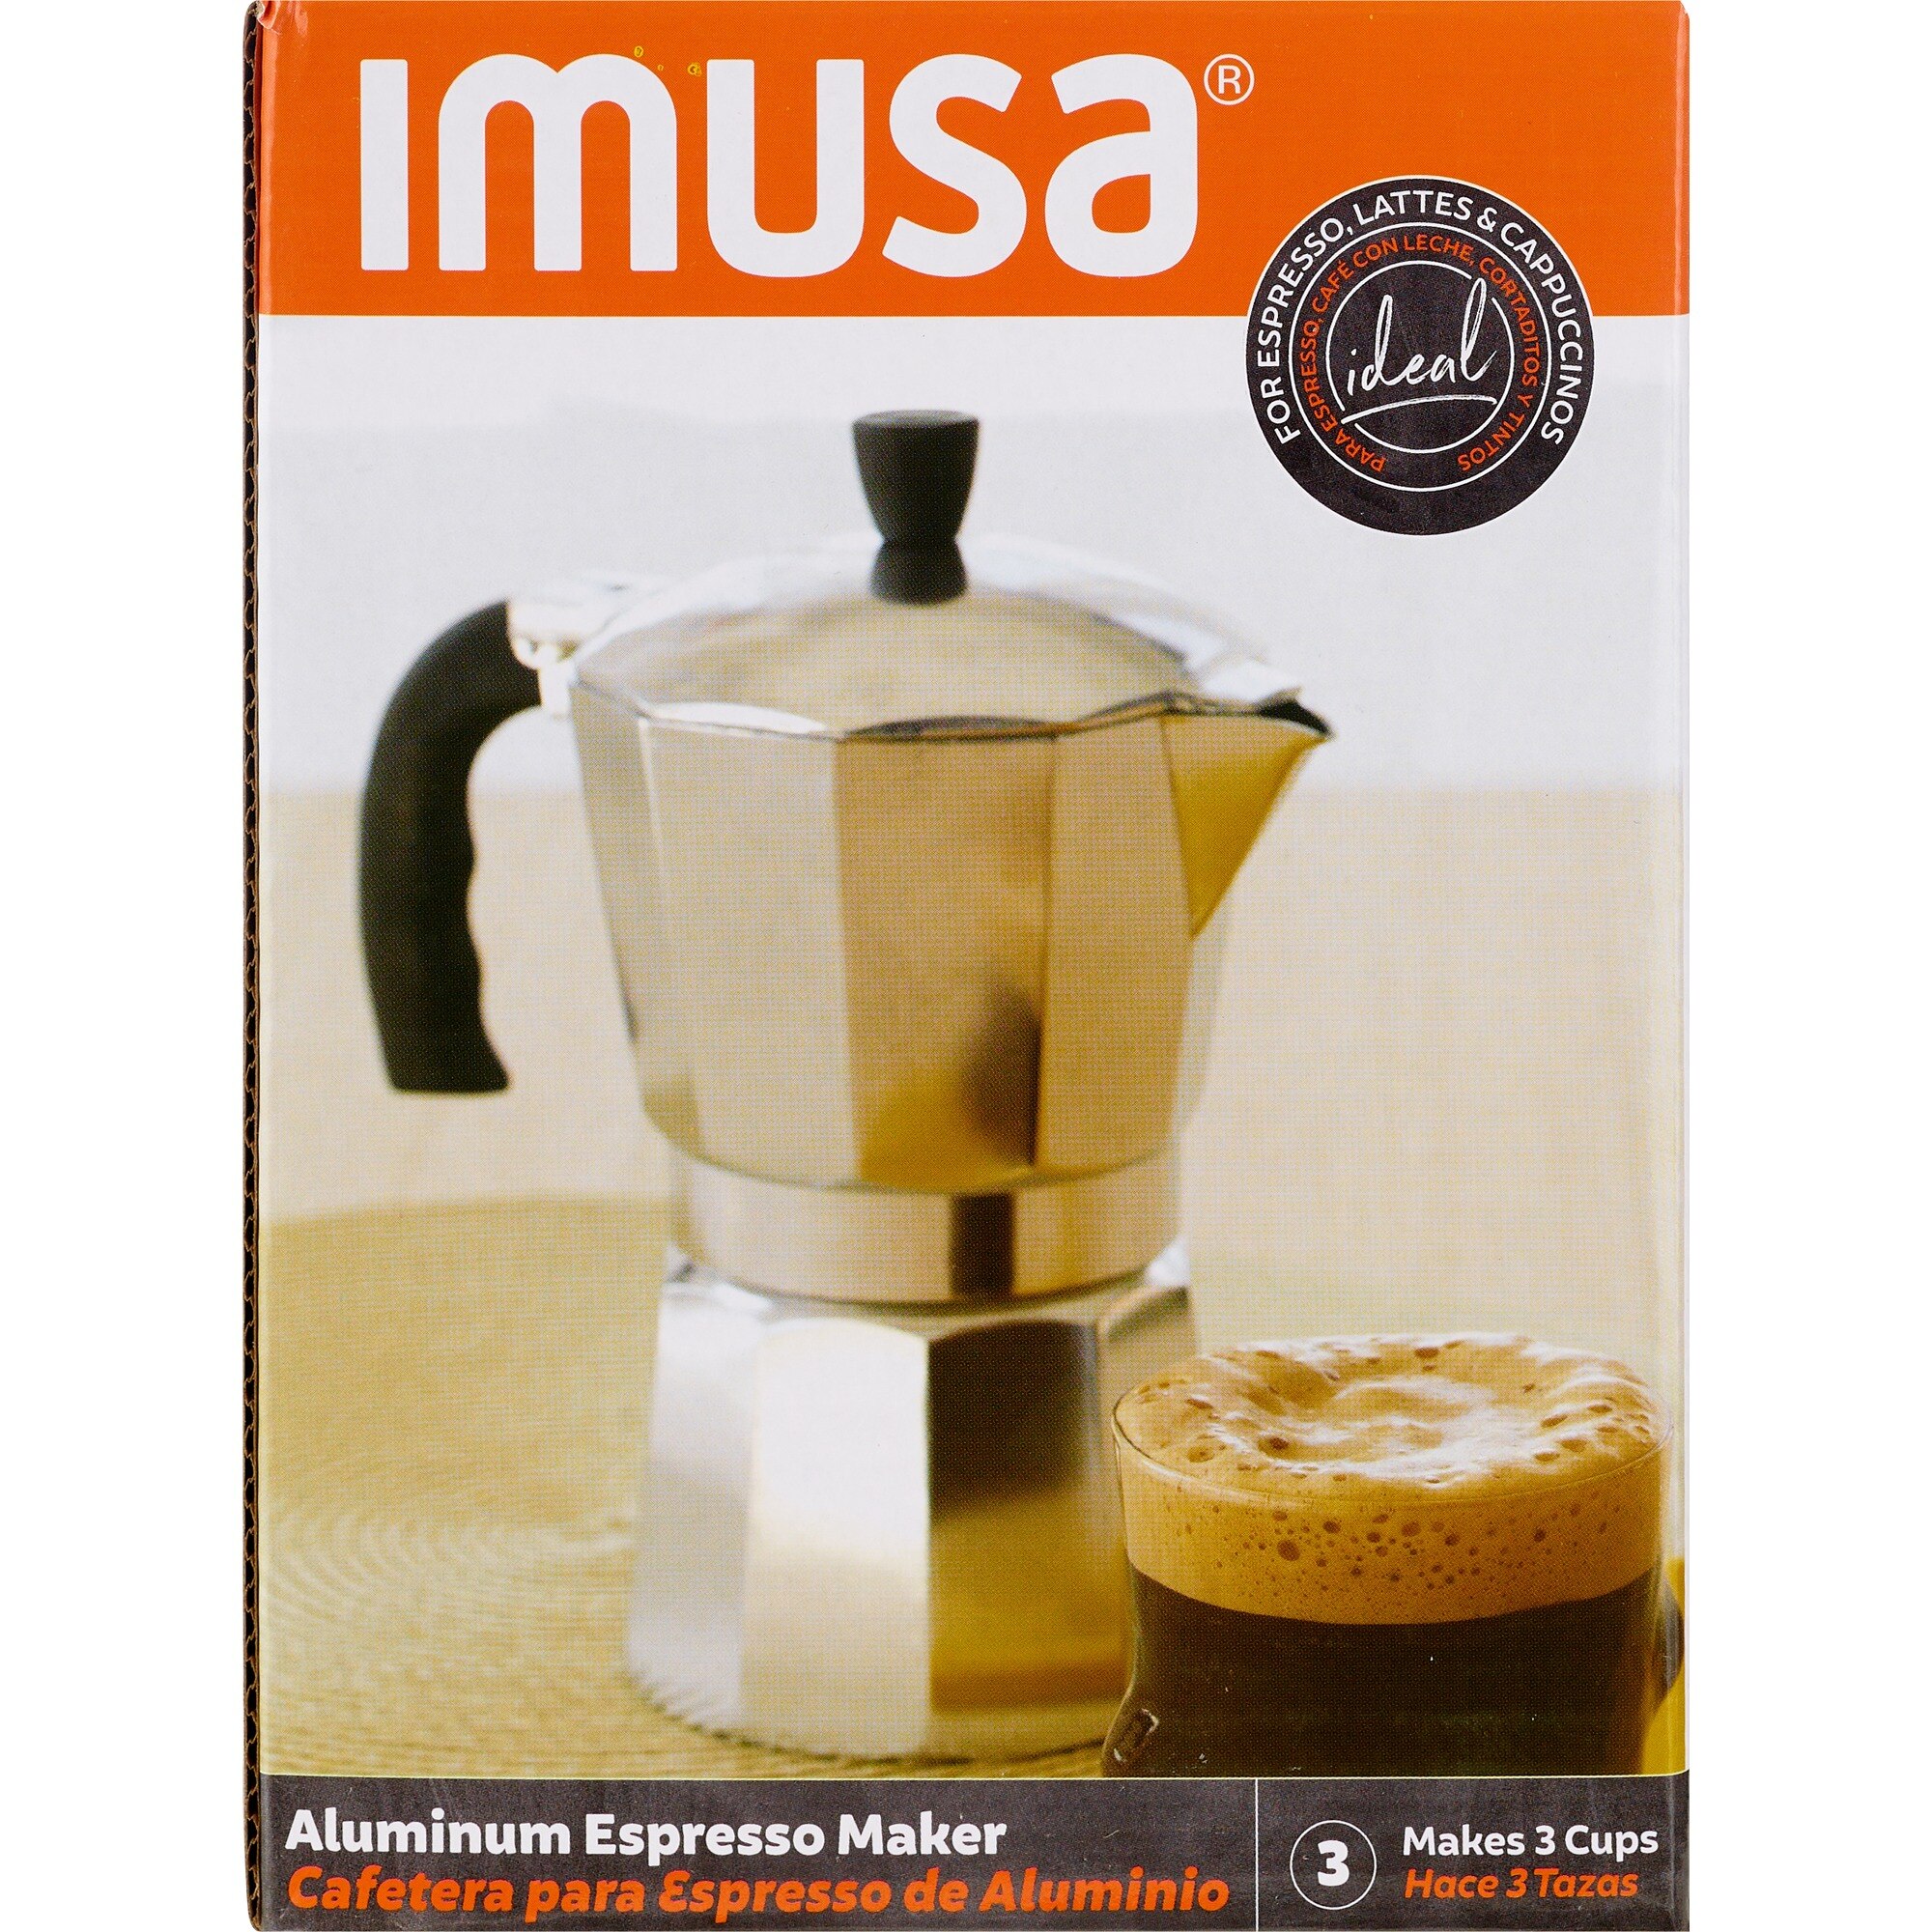 Imusa Electric Espresso Maker